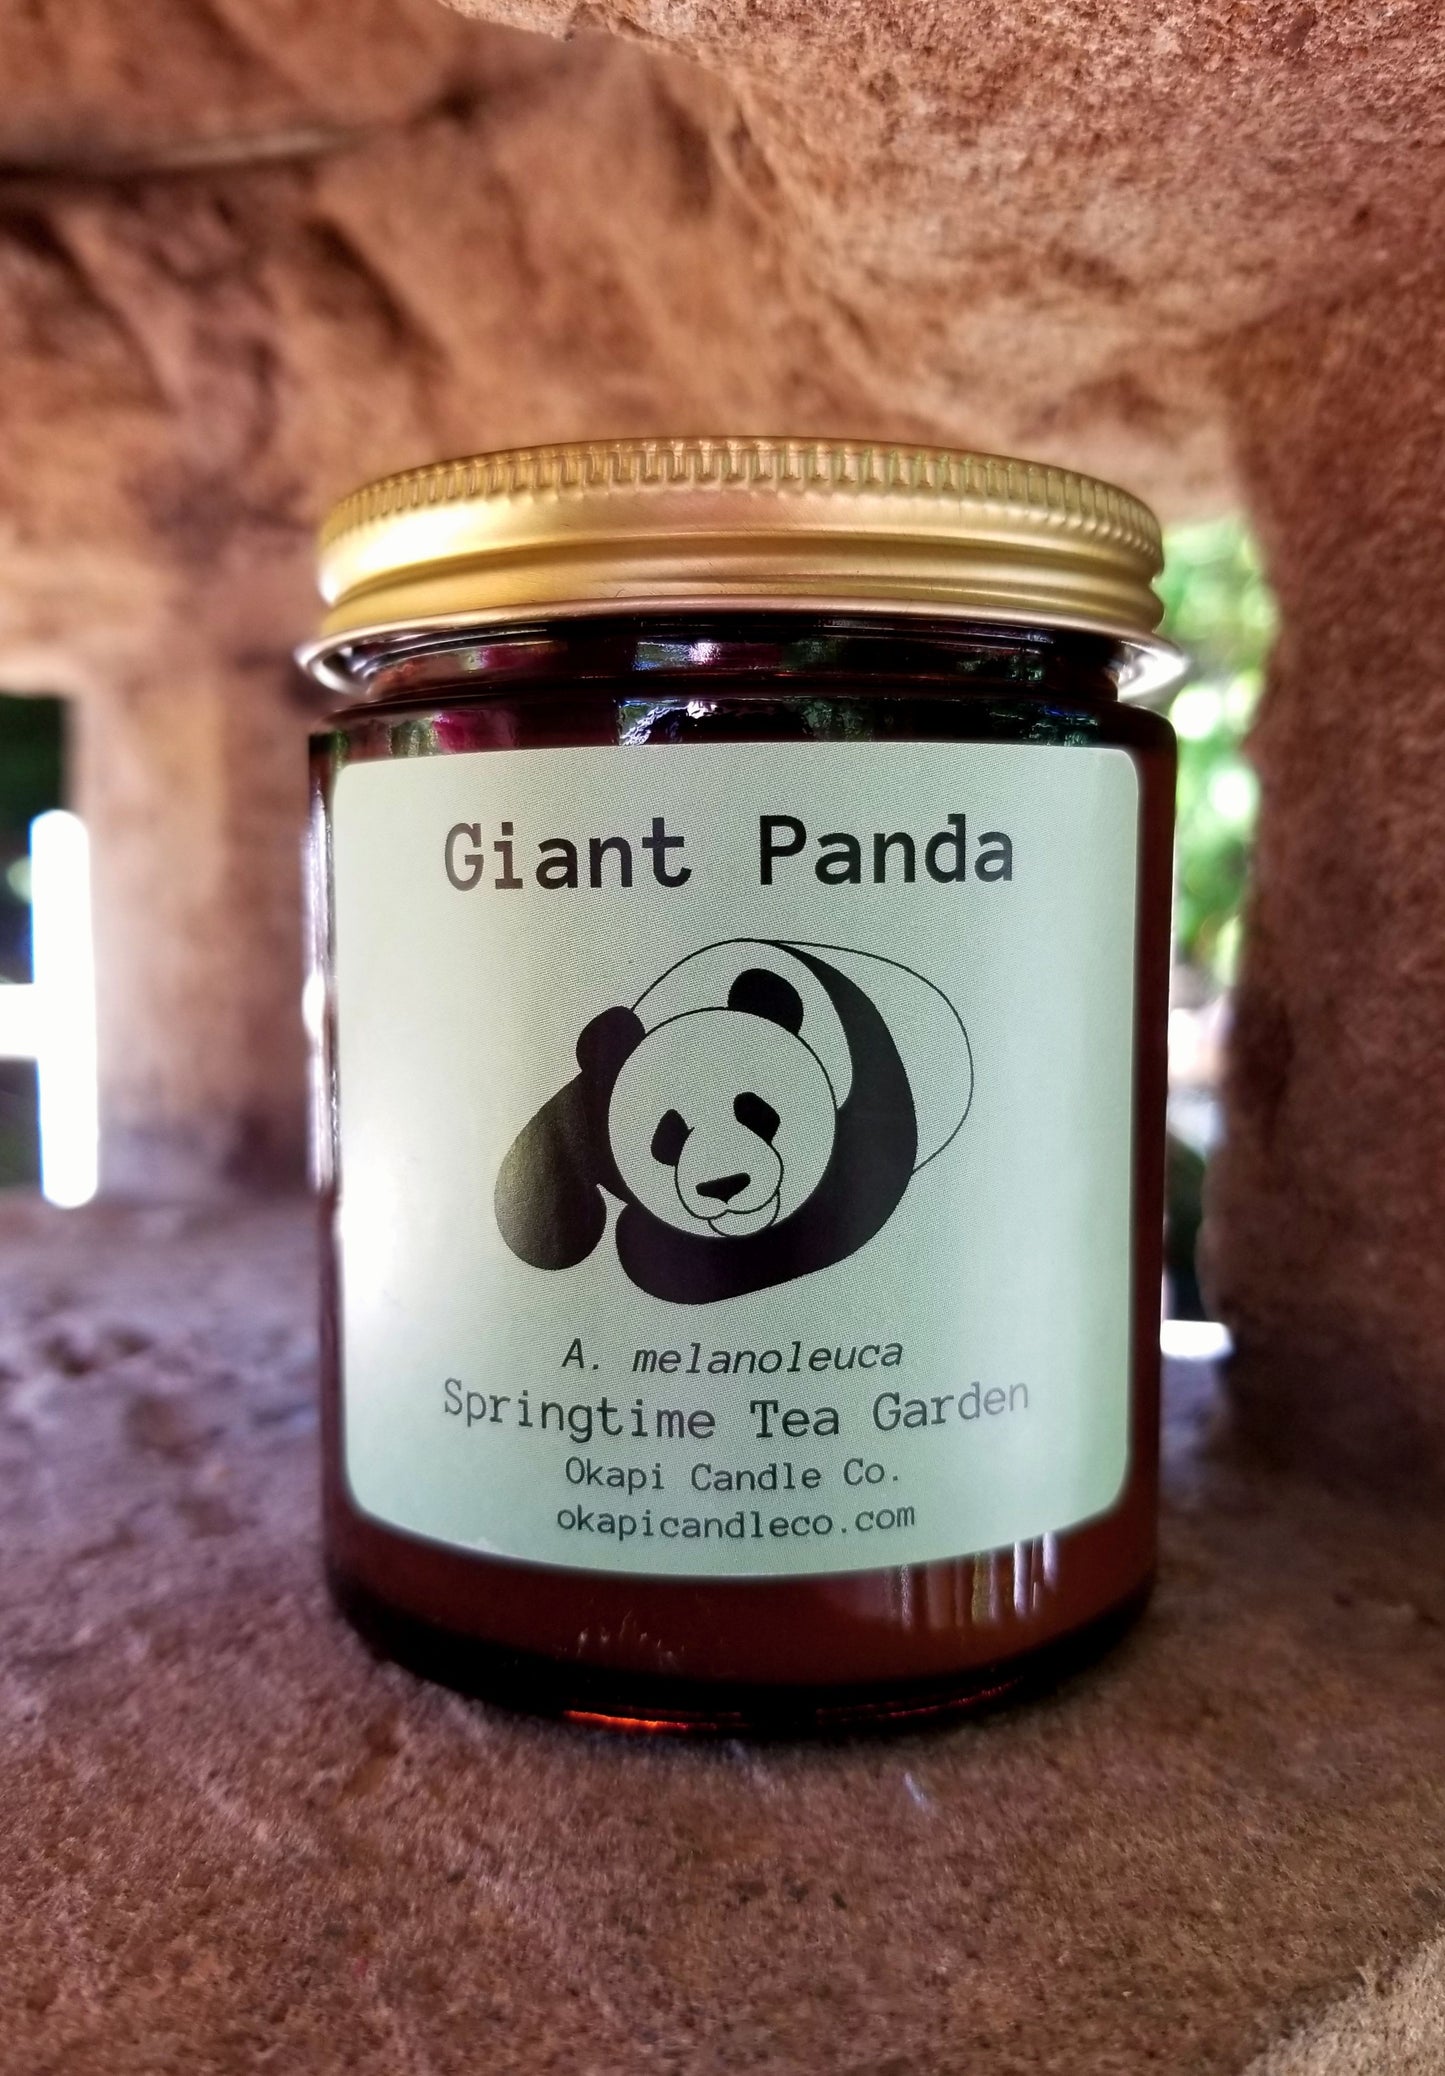 Giant Panda Soy Candle - Springtime Tea Garden Fragrance